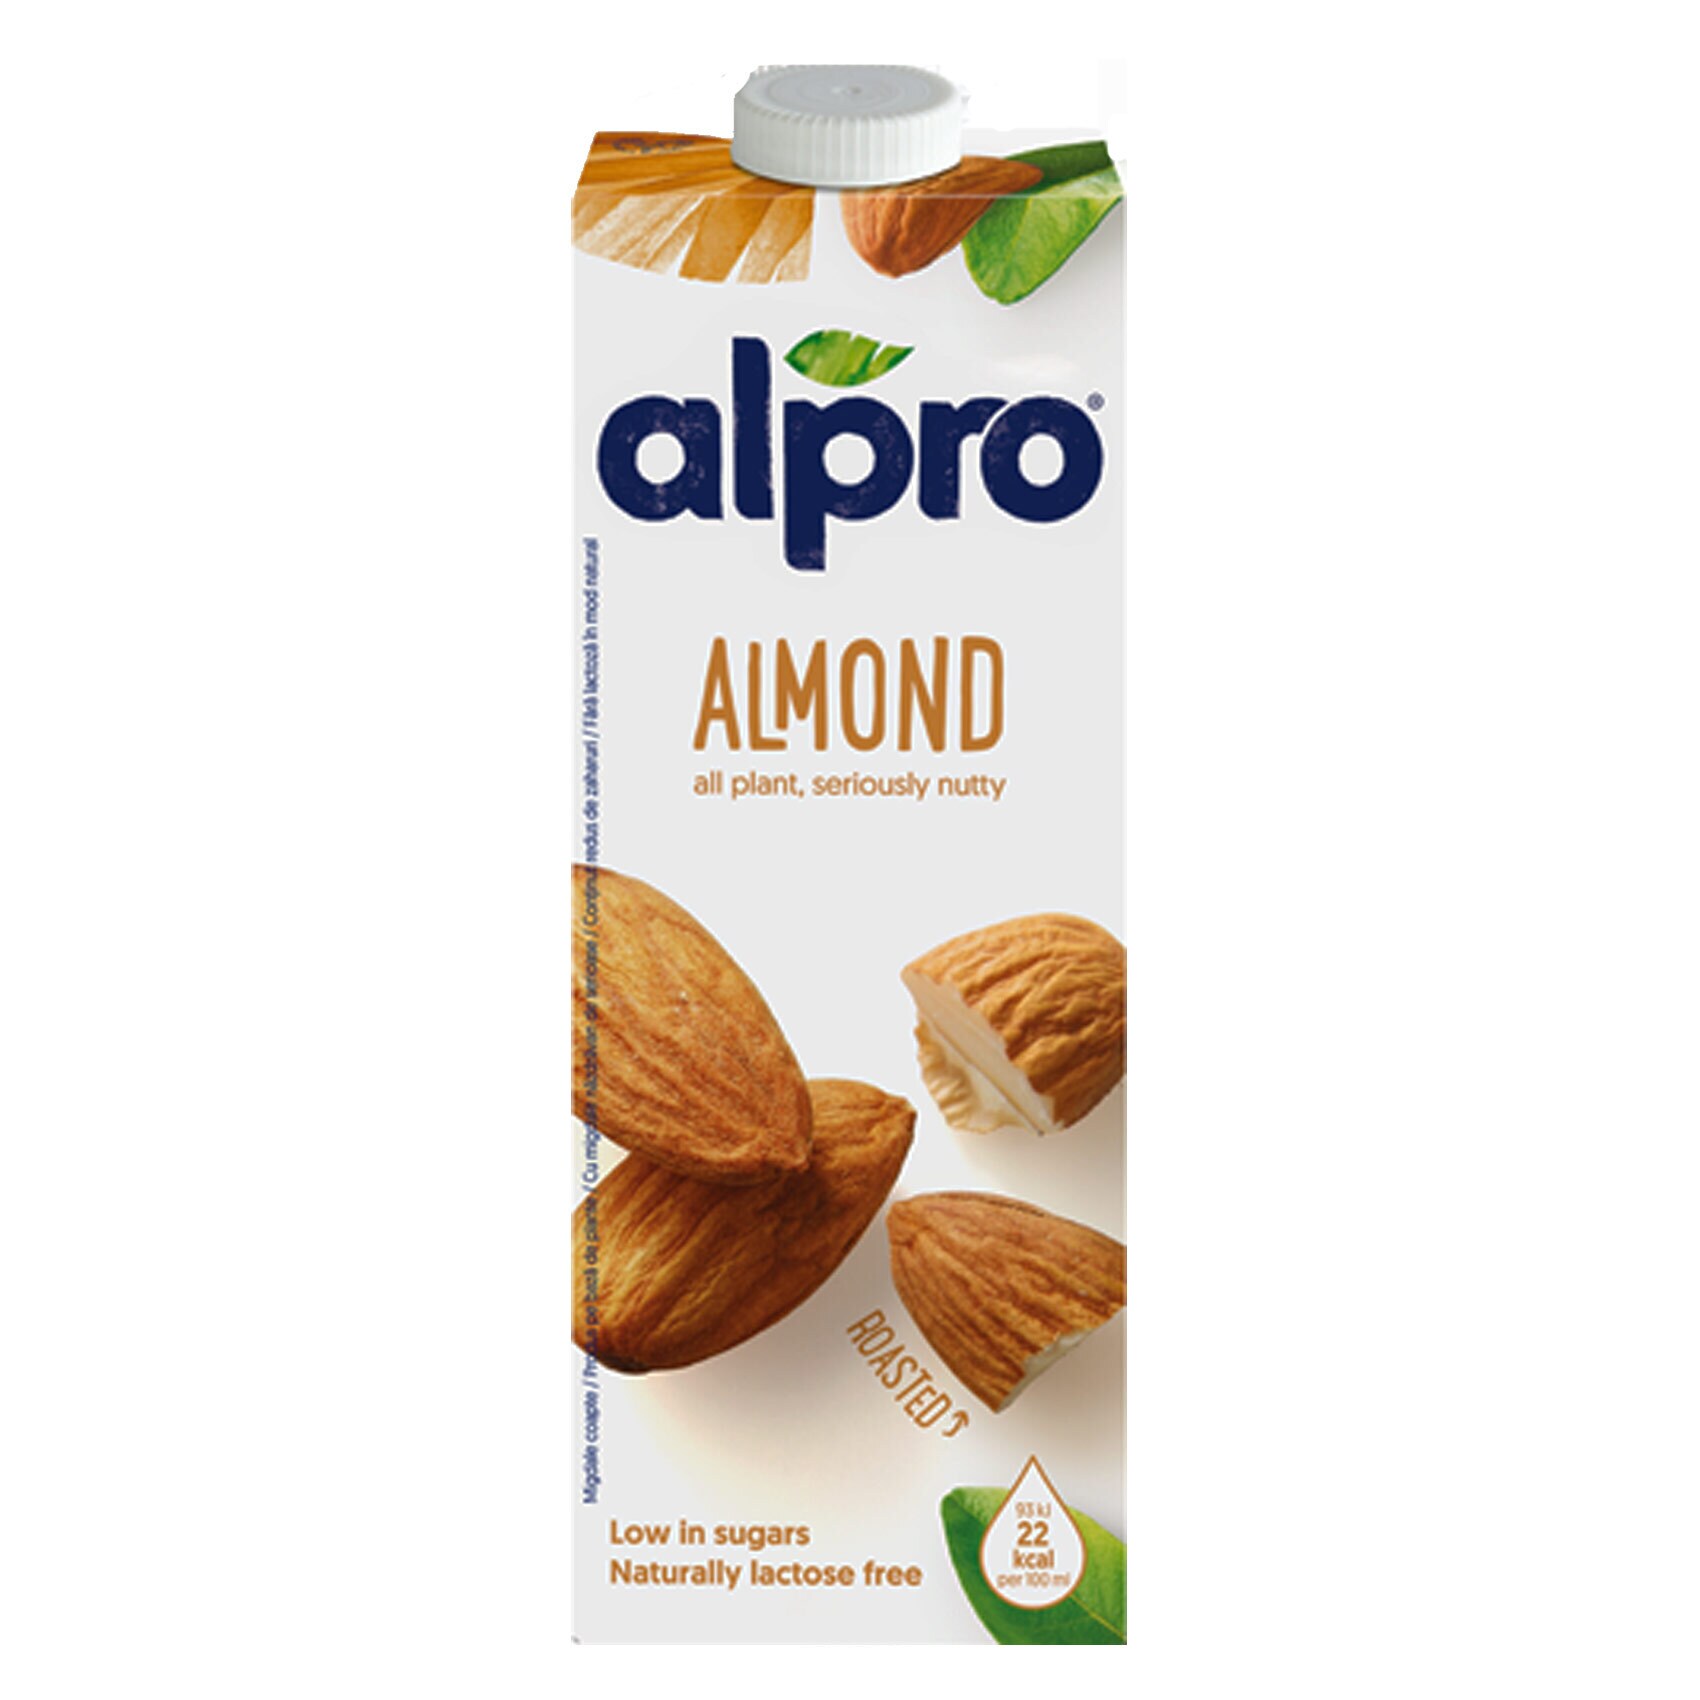 Bjorg Organic Almond Milk No Sugar 1L